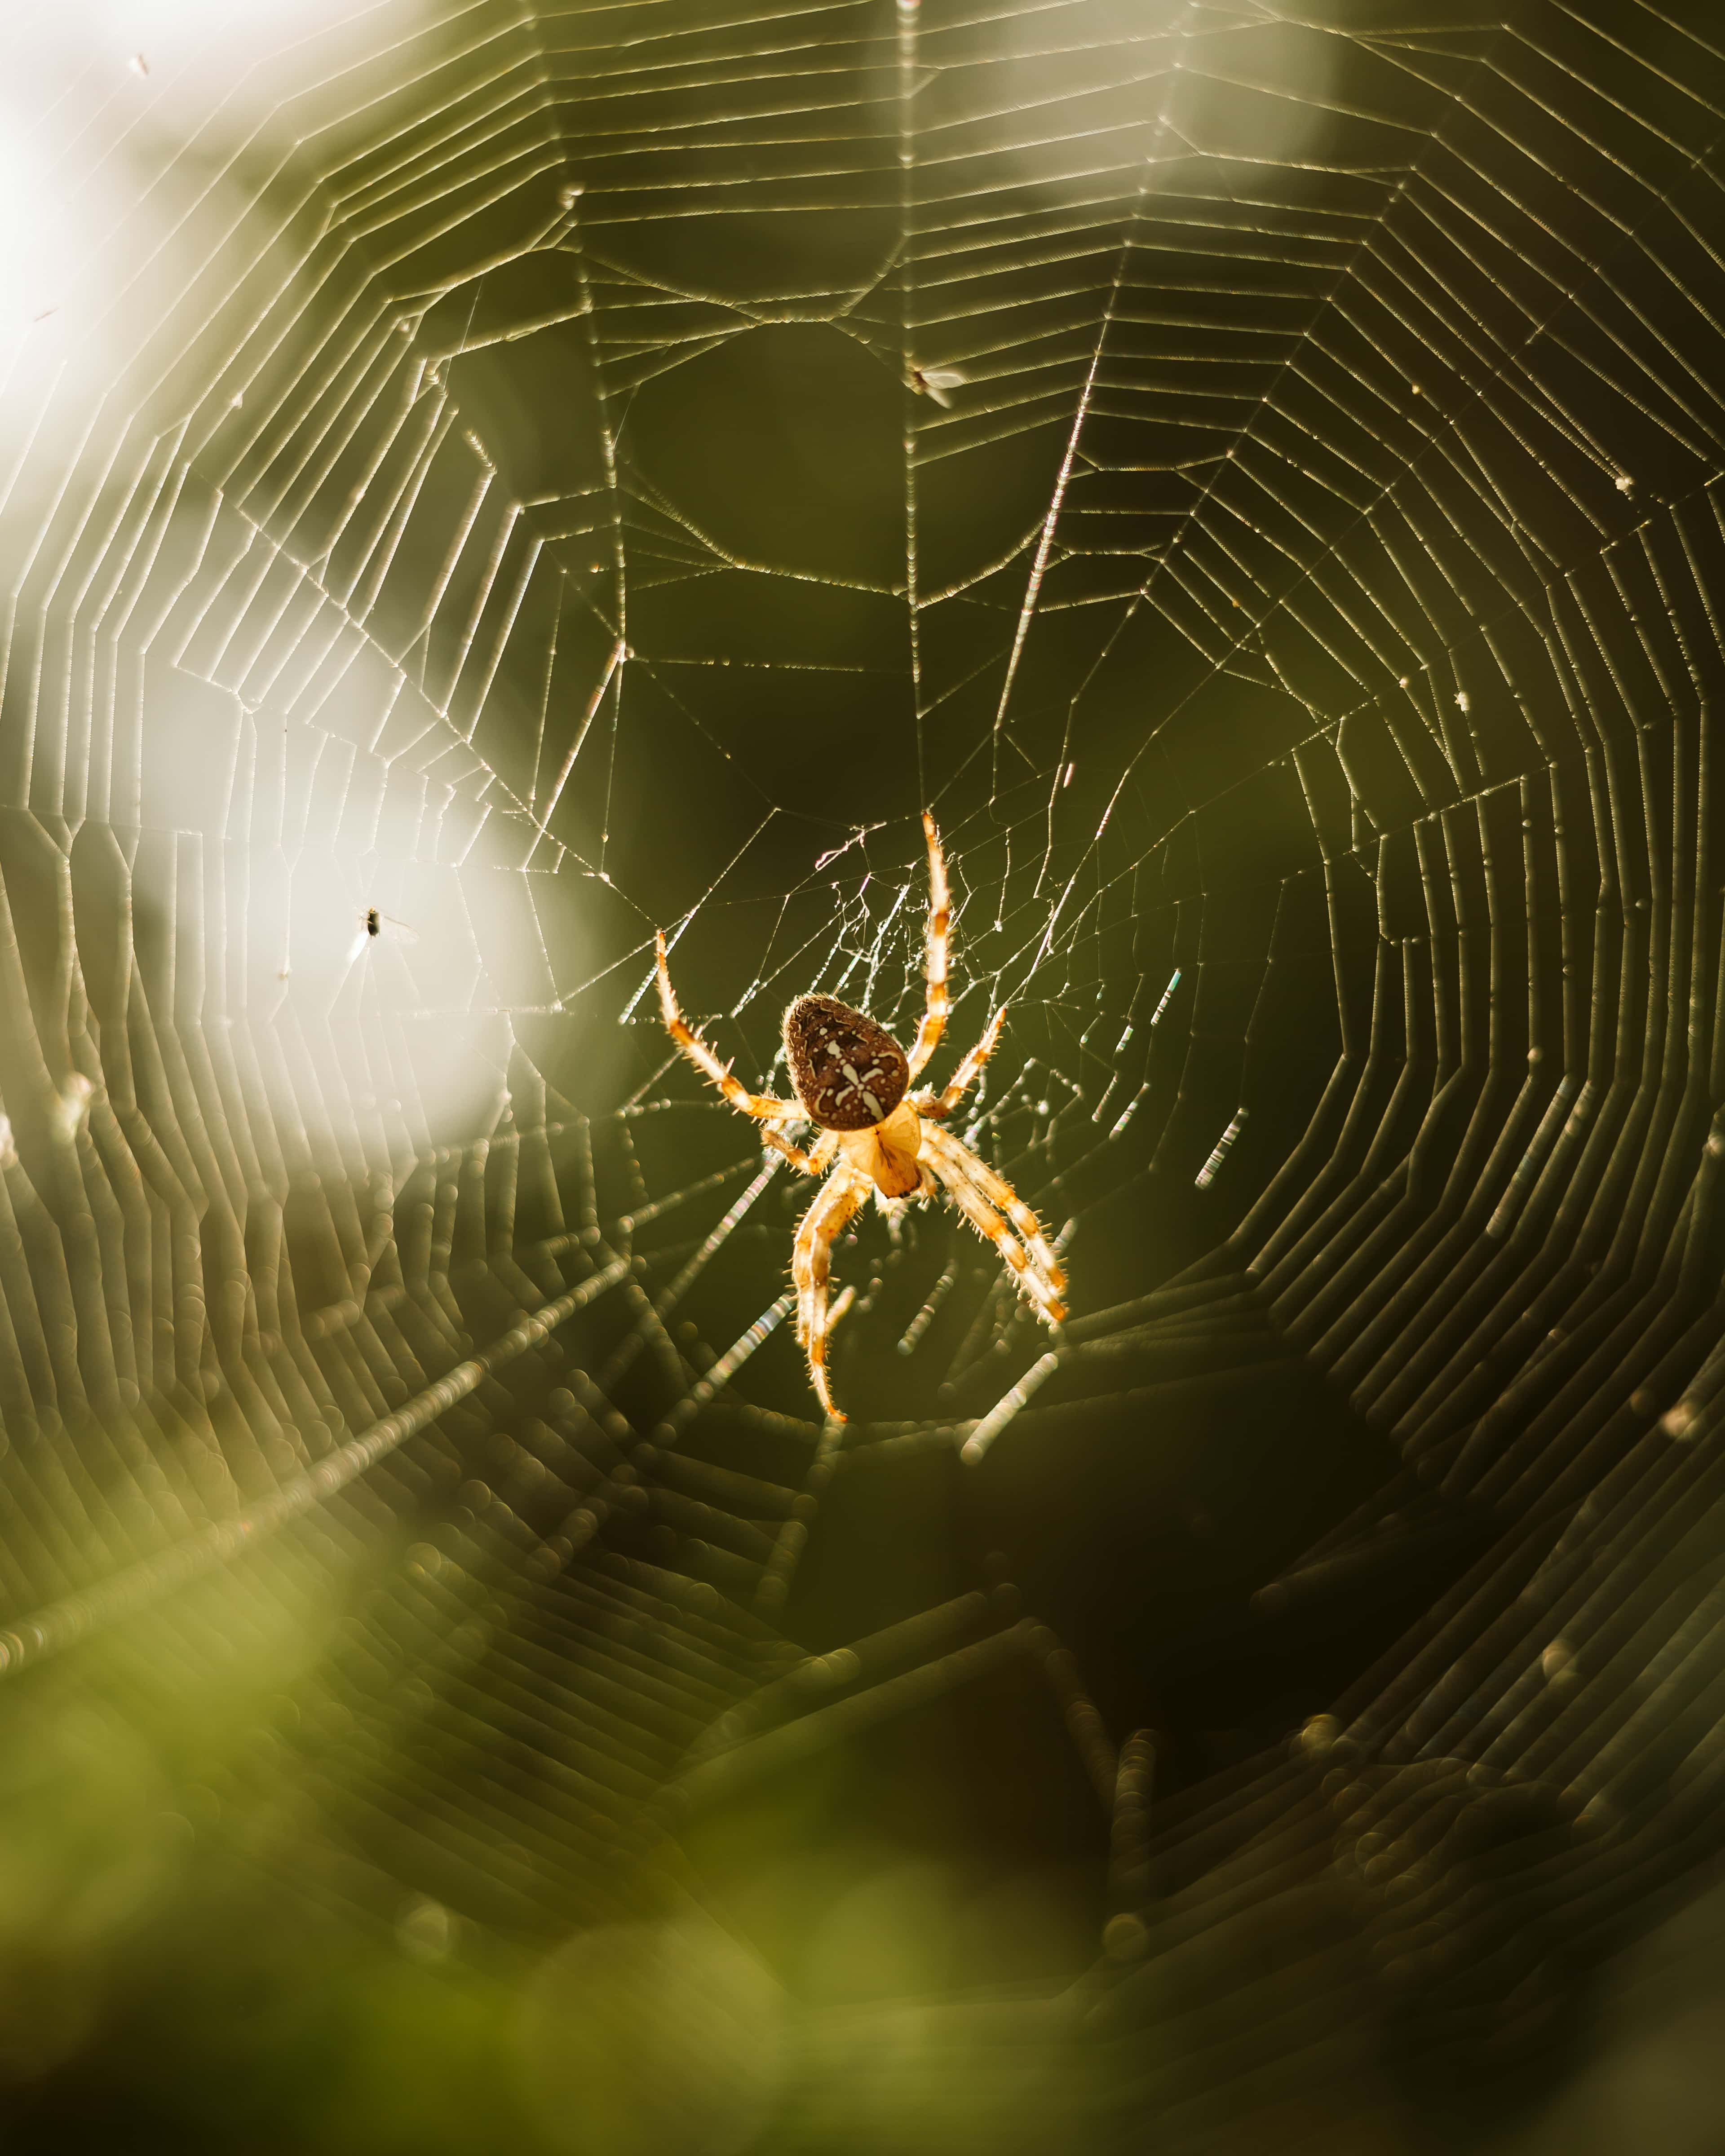 免费照片 蜘蛛网 蜘蛛 陷阱 背光 蛛网 蜘蛛 蜘蛛网 危险 Web 昆虫